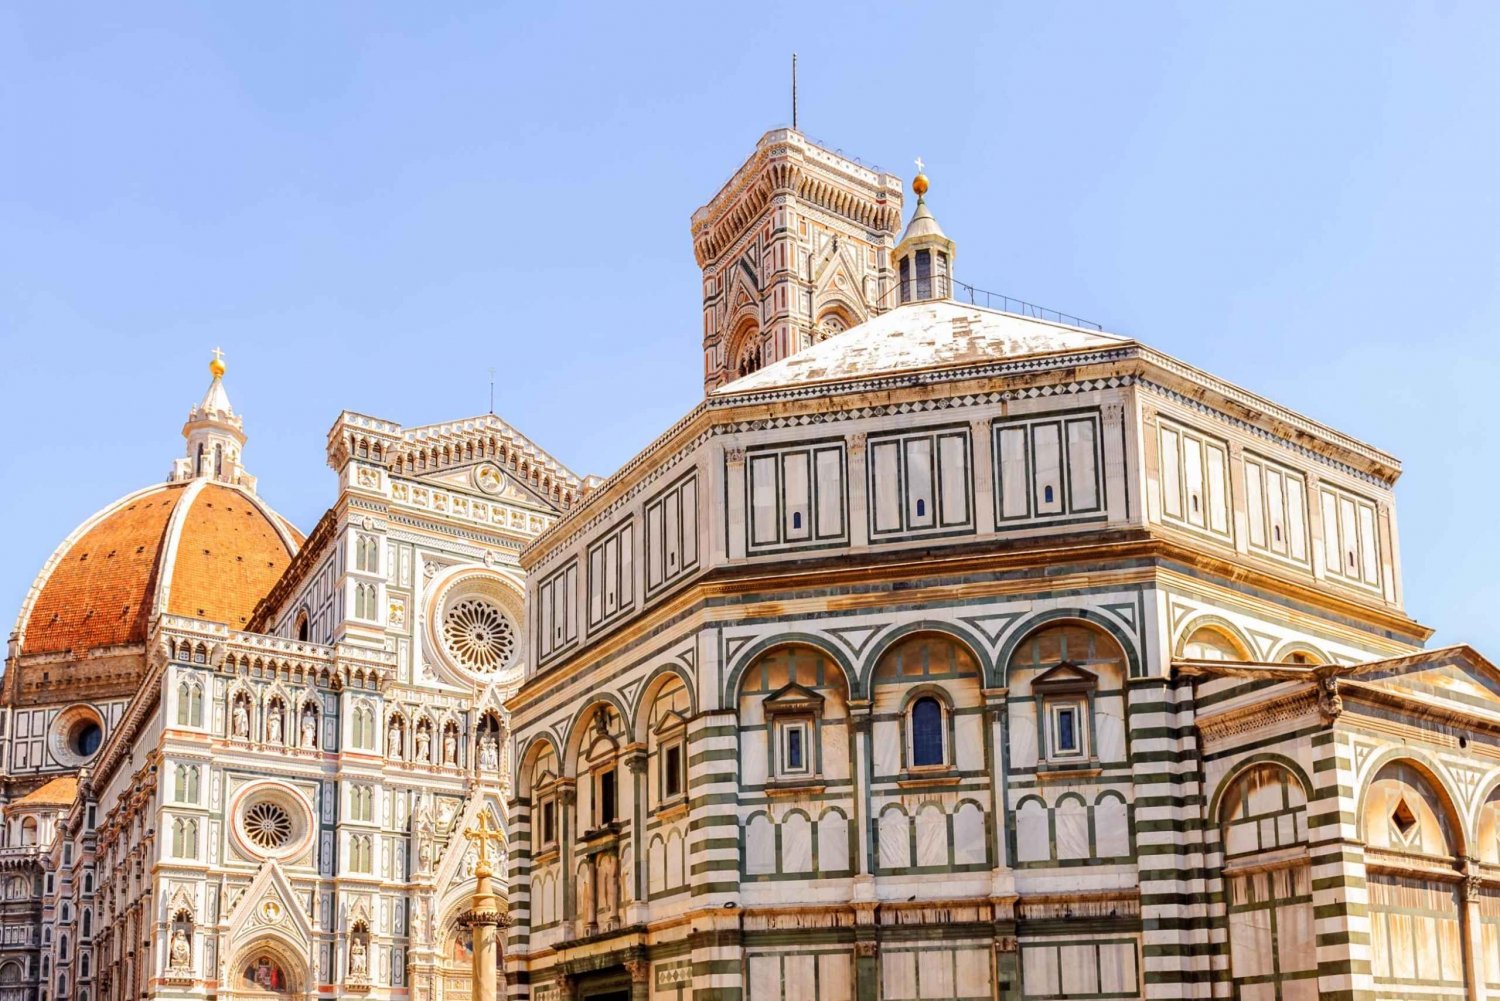 Firenze: Domklatring, museum og baptistkirke - tur for en lille gruppe